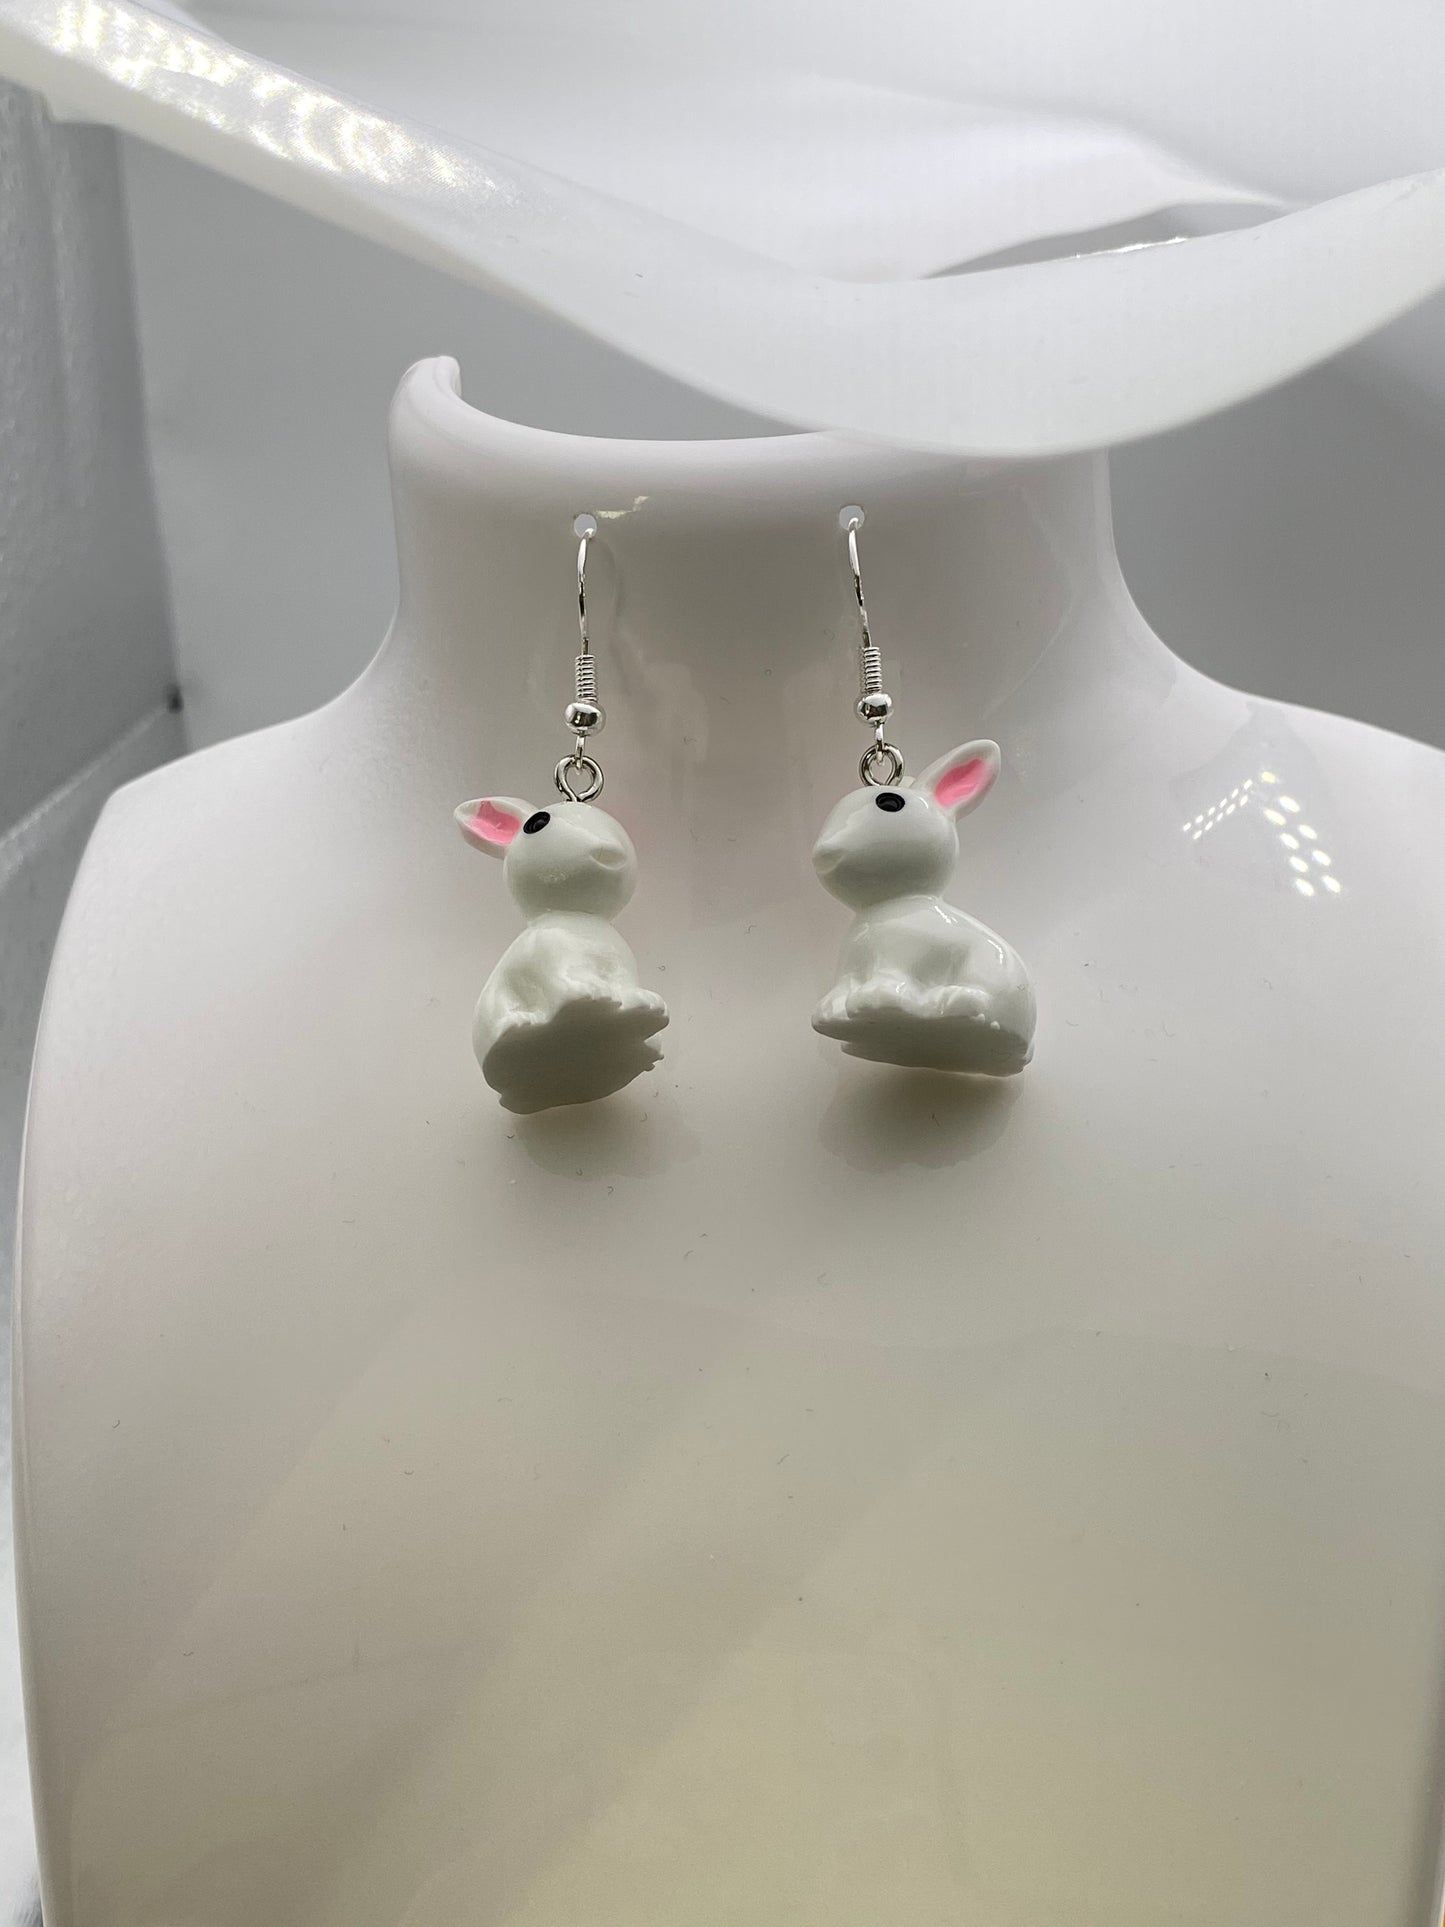 White Rabbit Earrings